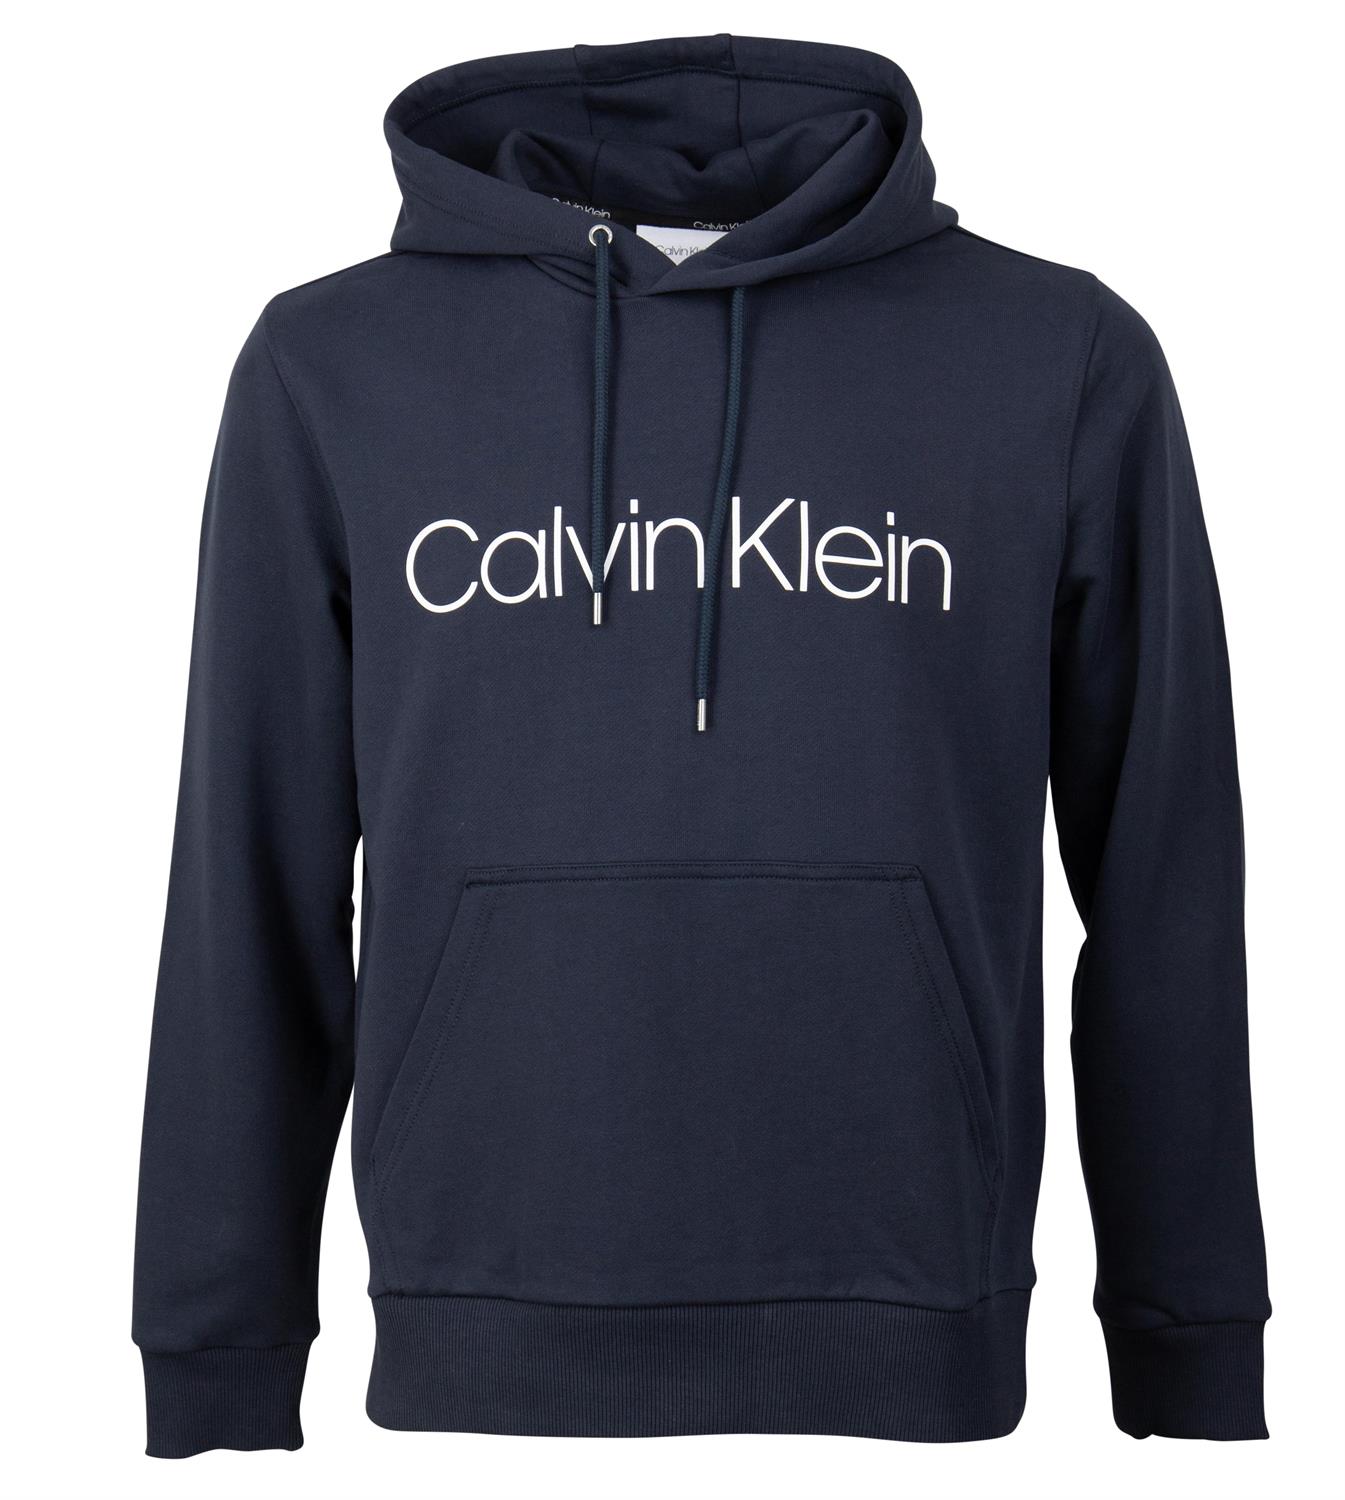 Calvin Klein Herren Sweatshirt LOGO HOODIE AUS BIO-BAUMWOLLE blau bequem  online kaufen bei